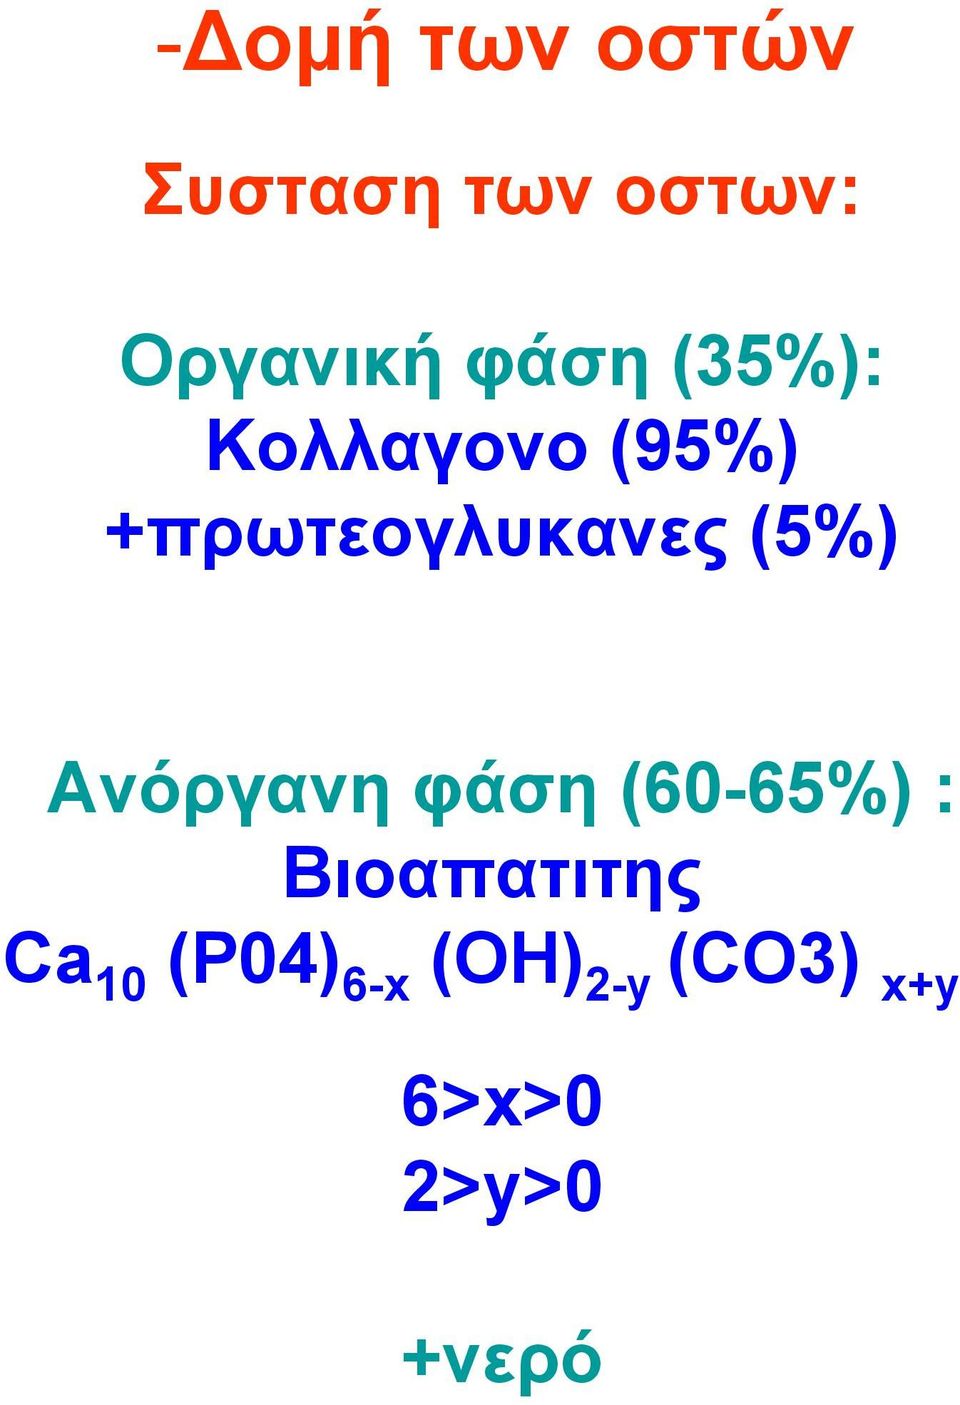 (5%) Ανόργανη φάση (60-65%) : Βιοαπατιτης Ca